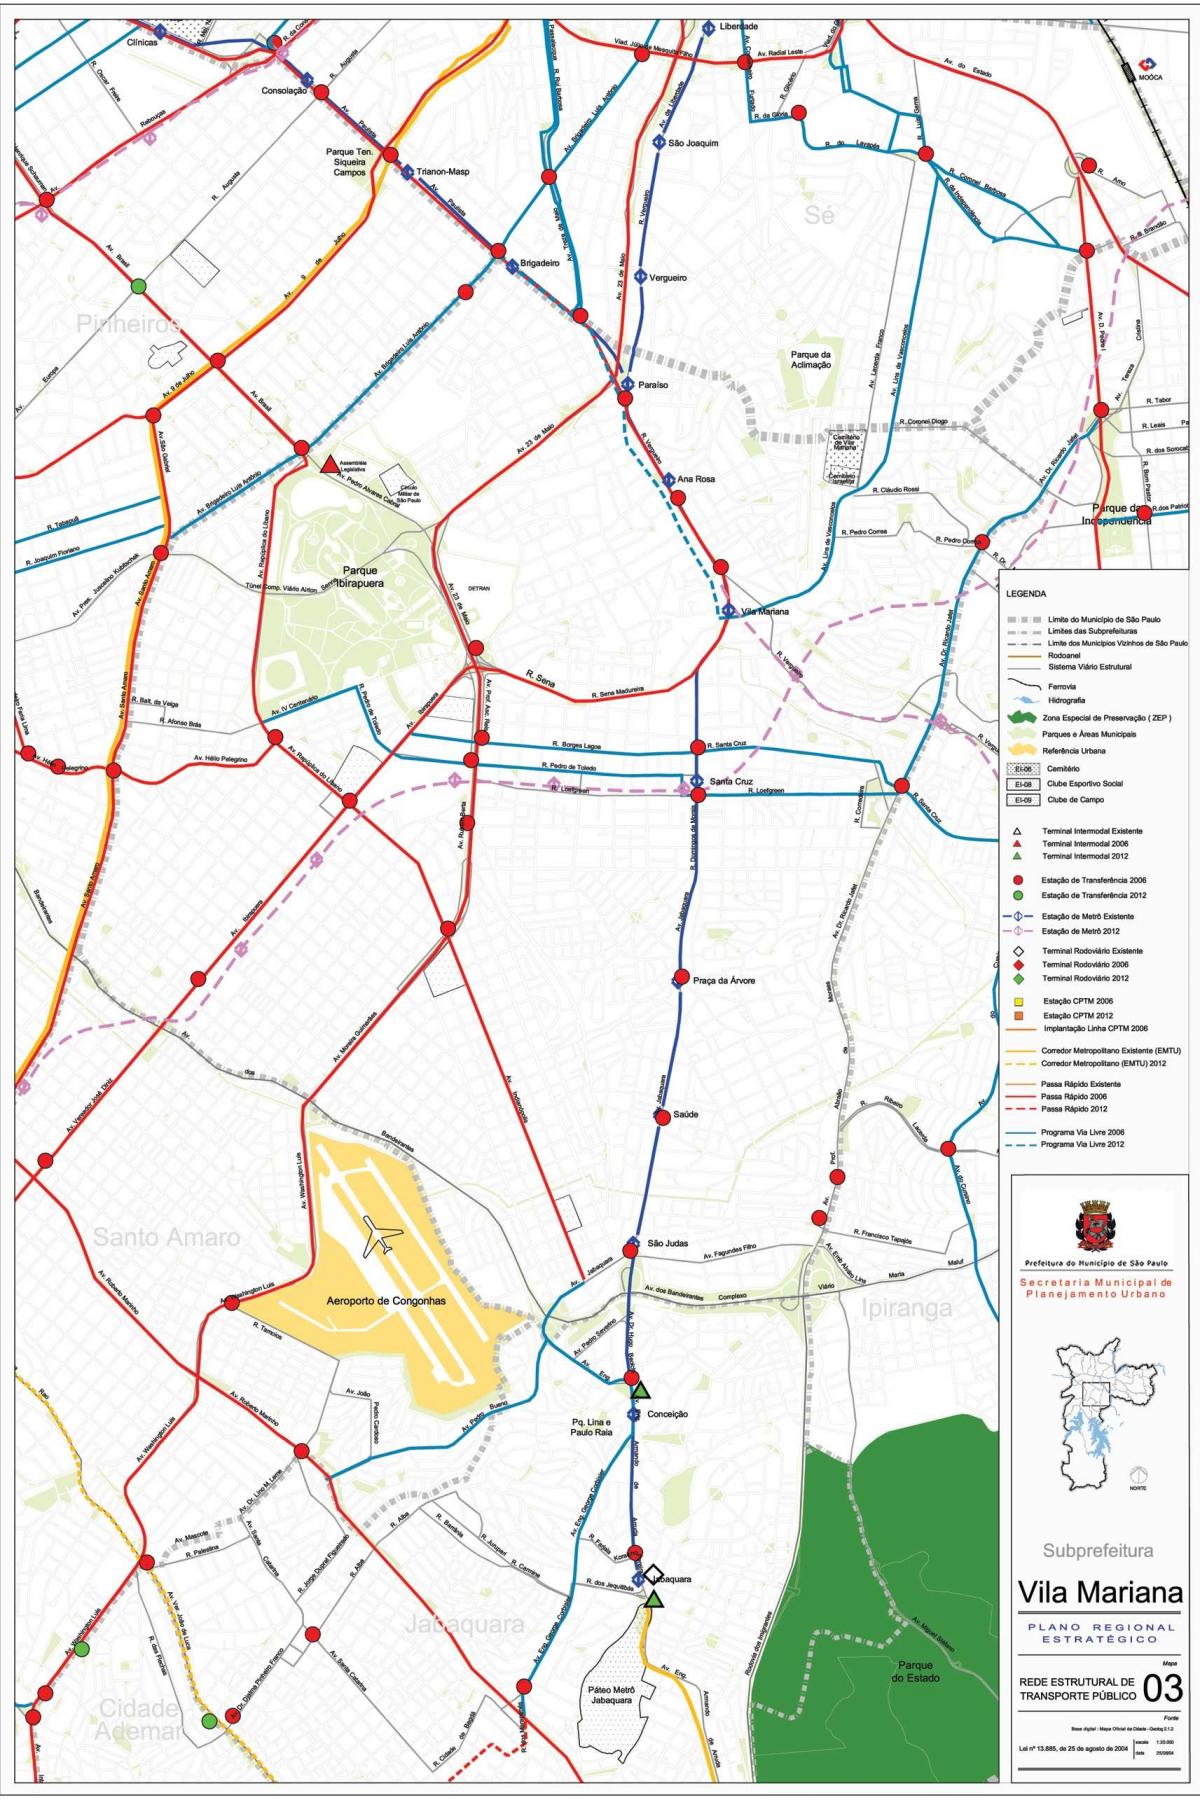 خريطة فيلا ماريانا ساو باولو - وسائل النقل العامة